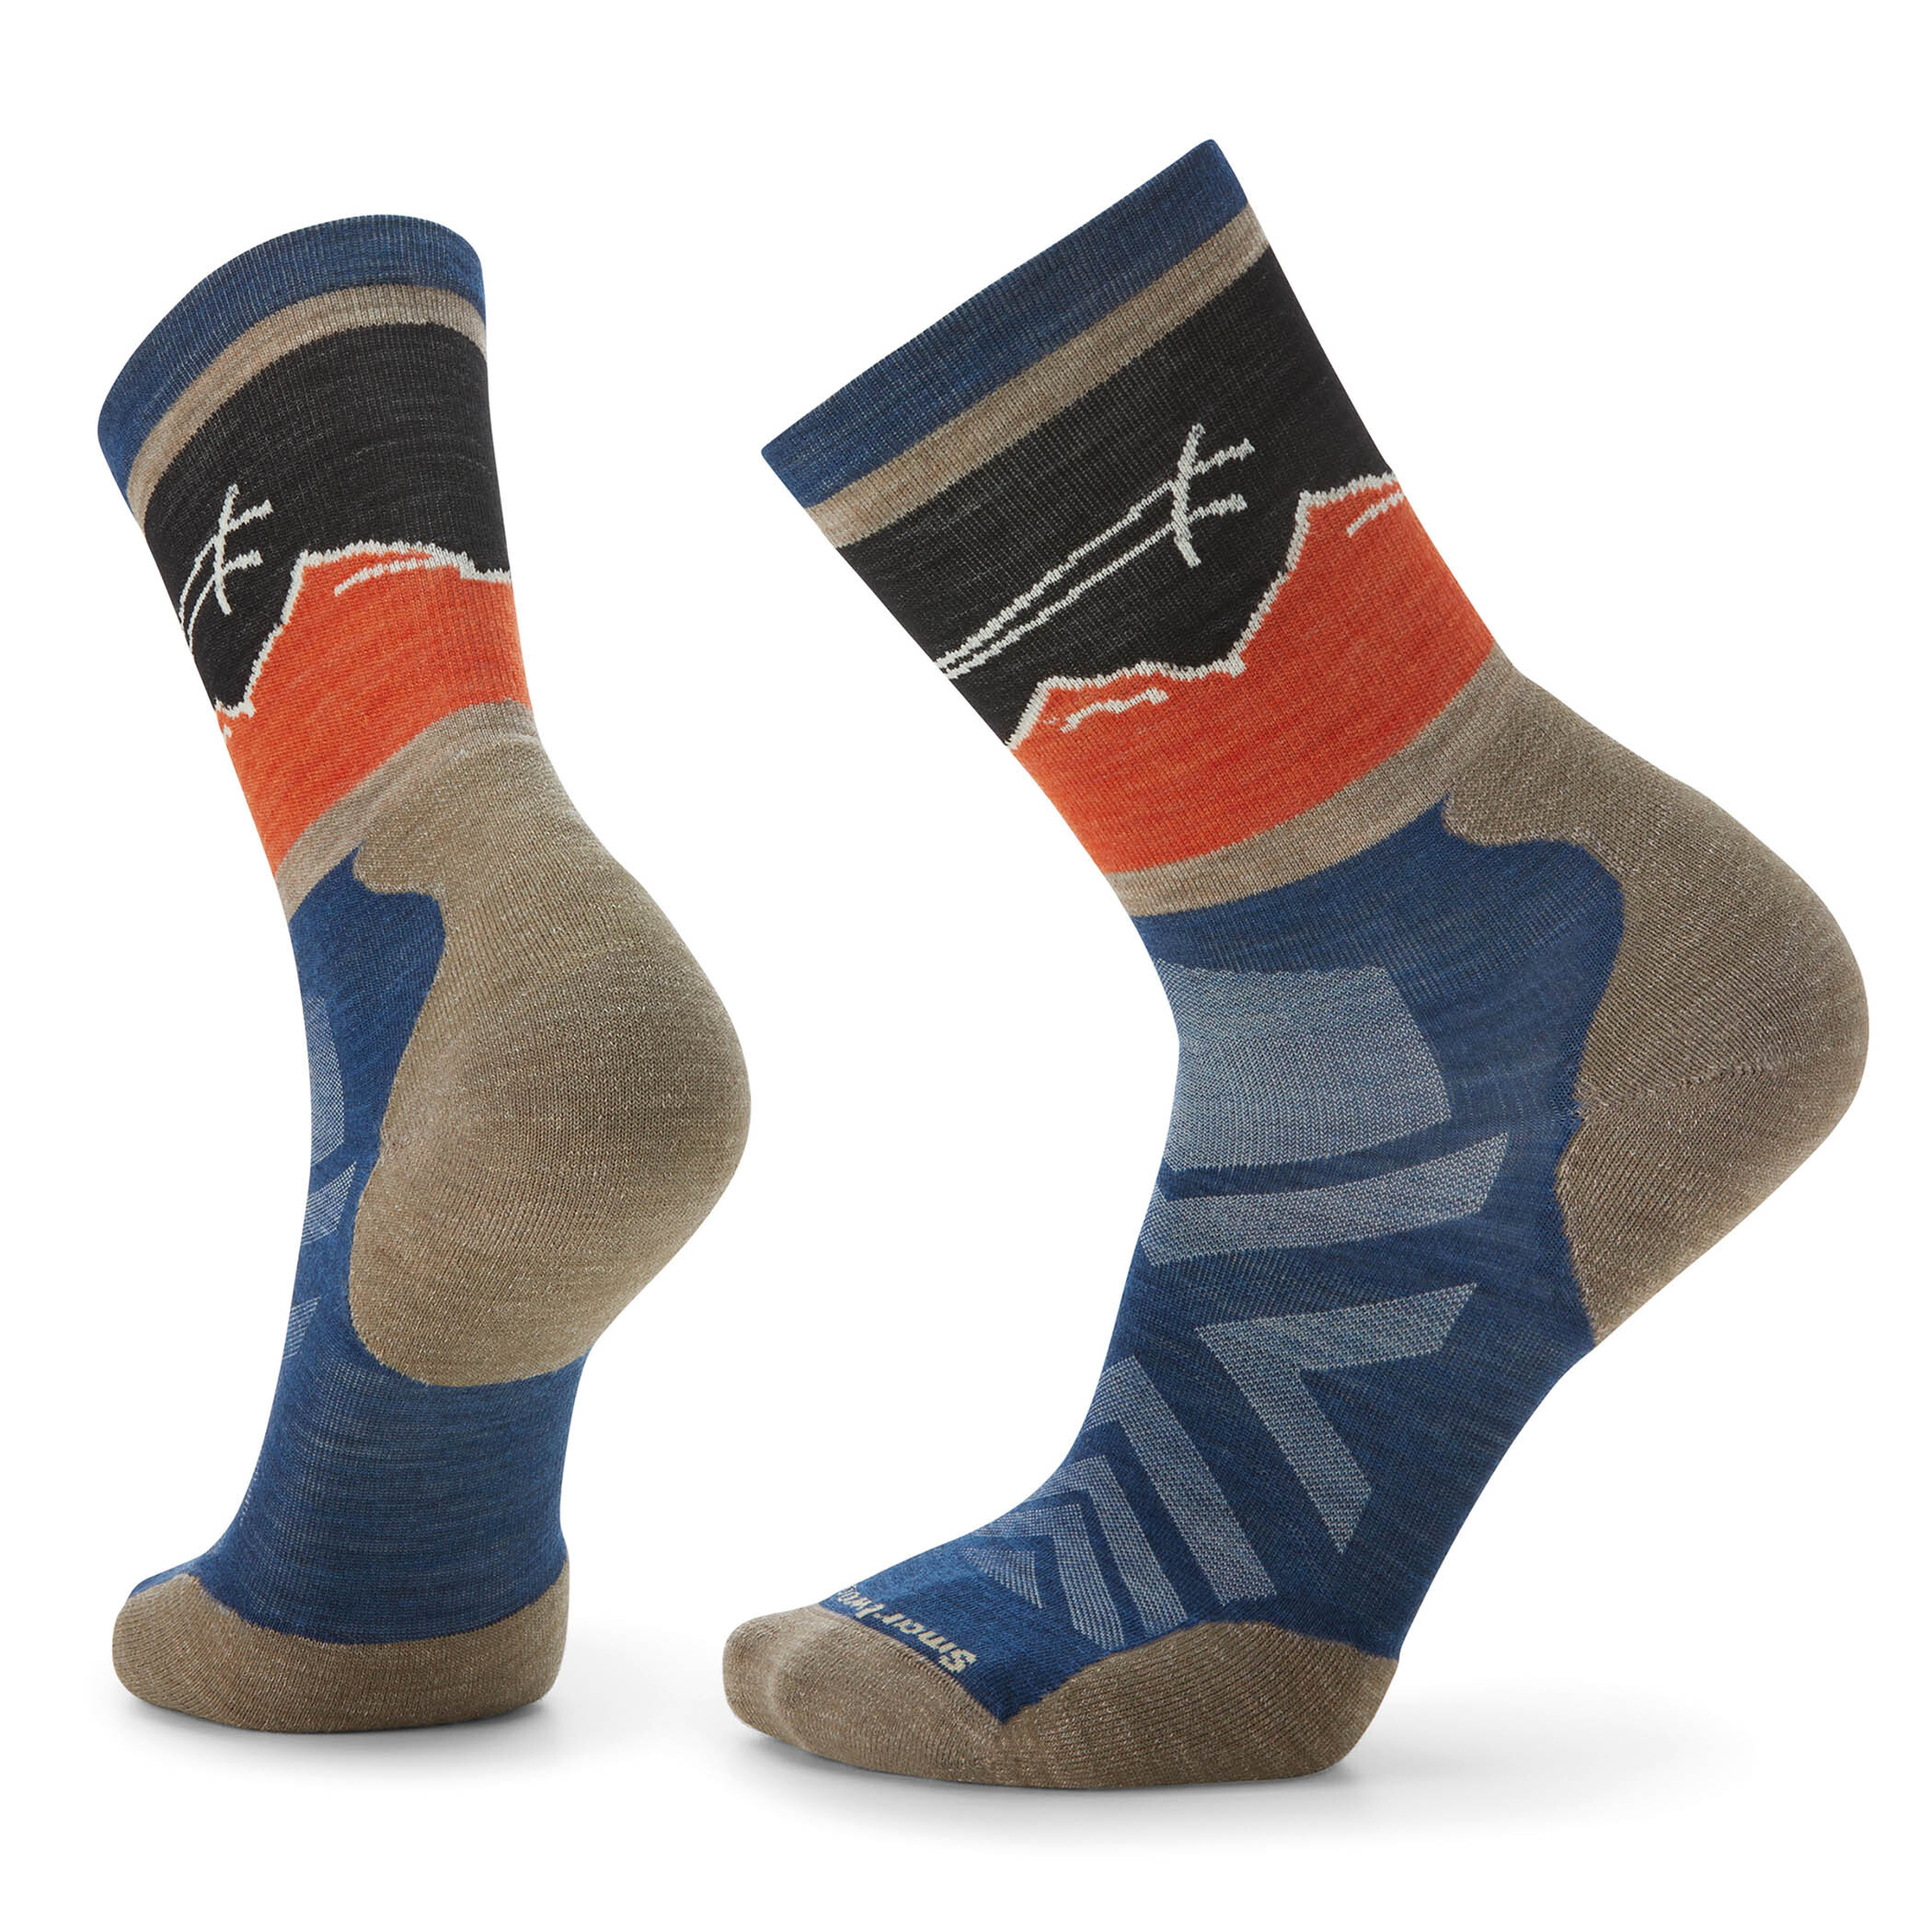 Athlete Edition Socken Smartwool | Crew col. Anlauf Blau für